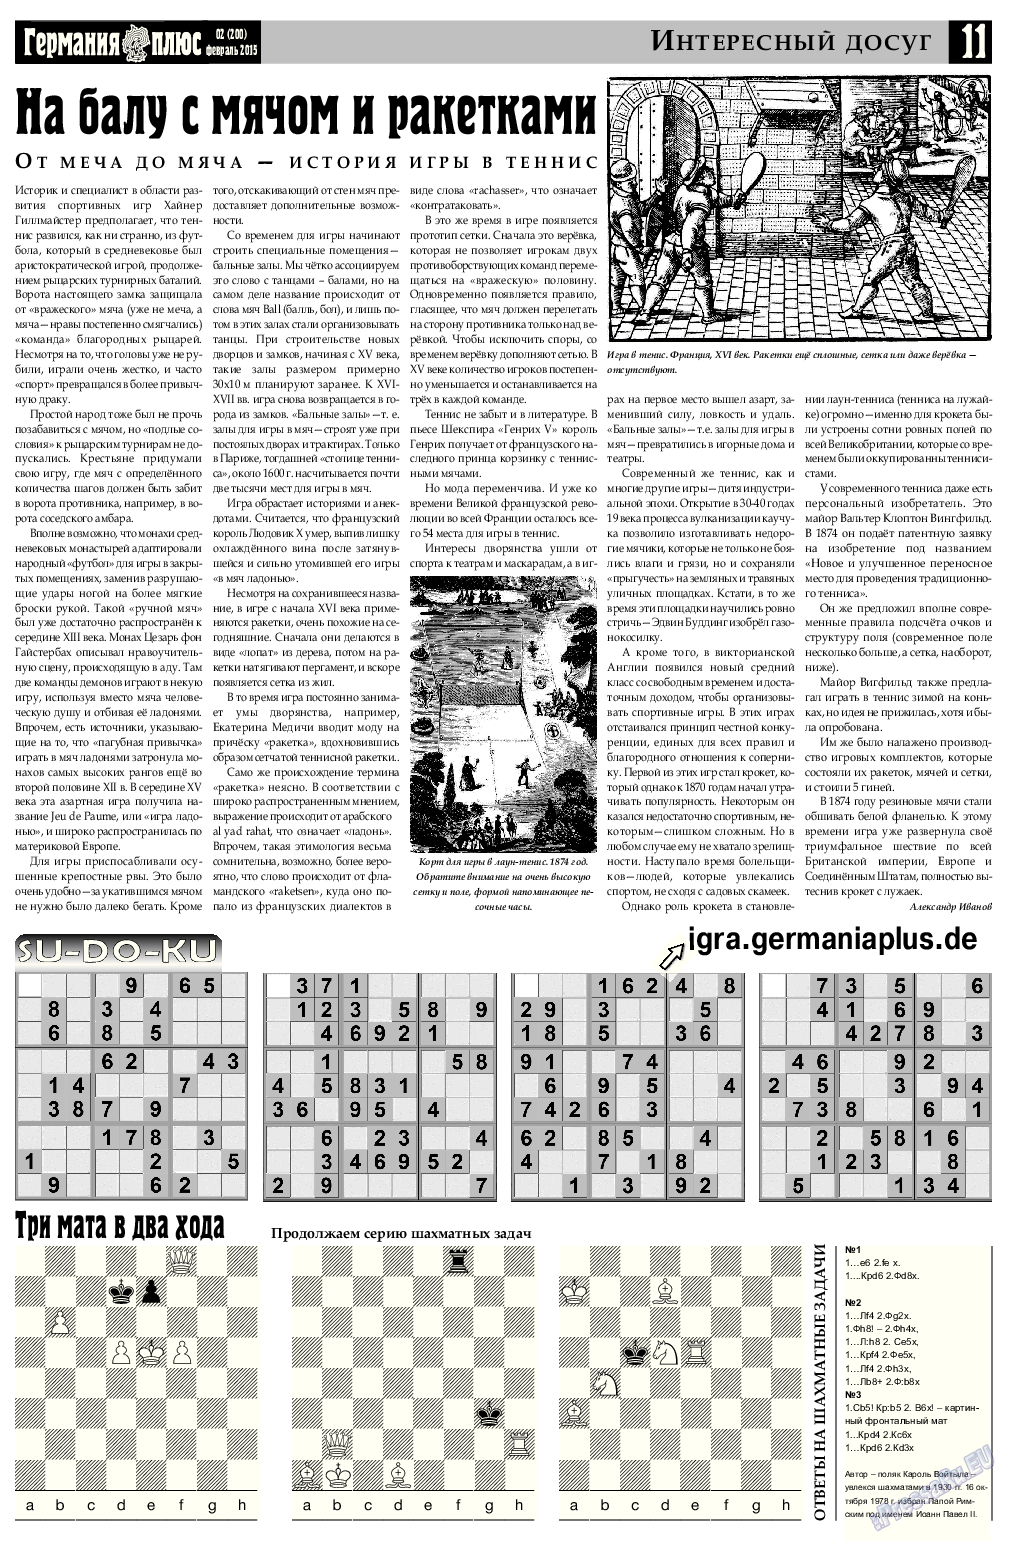 Германия плюс, газета. 2015 №2 стр.11